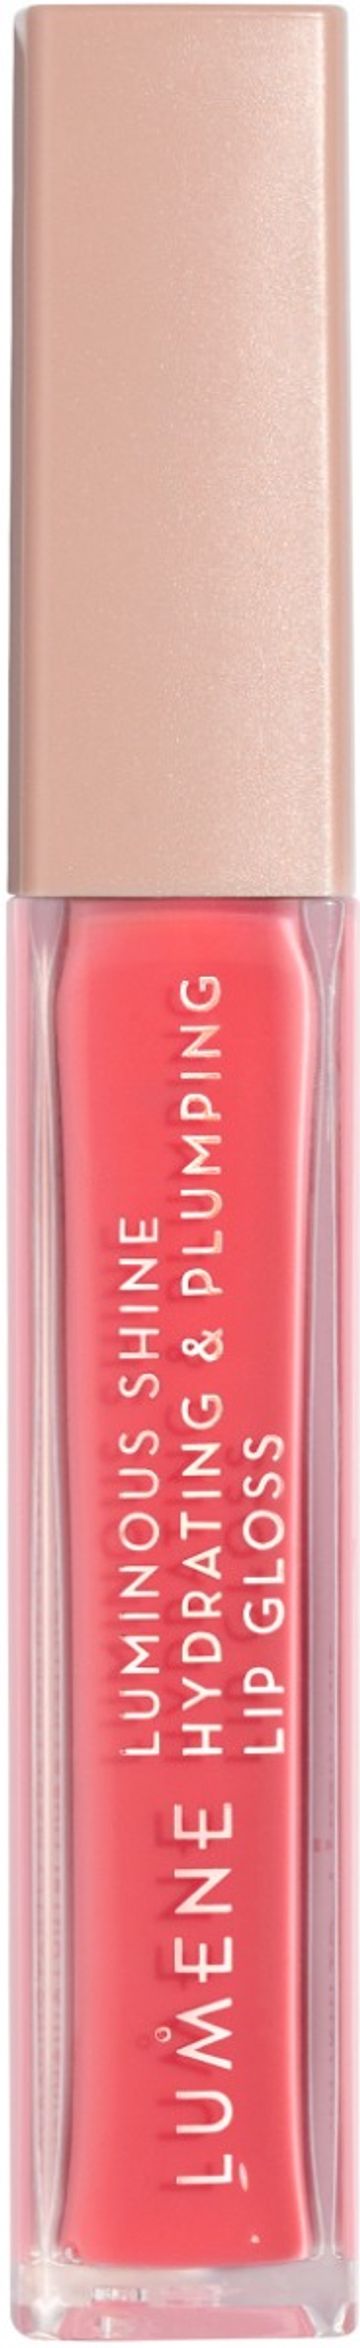 Lumene Luminous shine lip gloss 4 peach pink